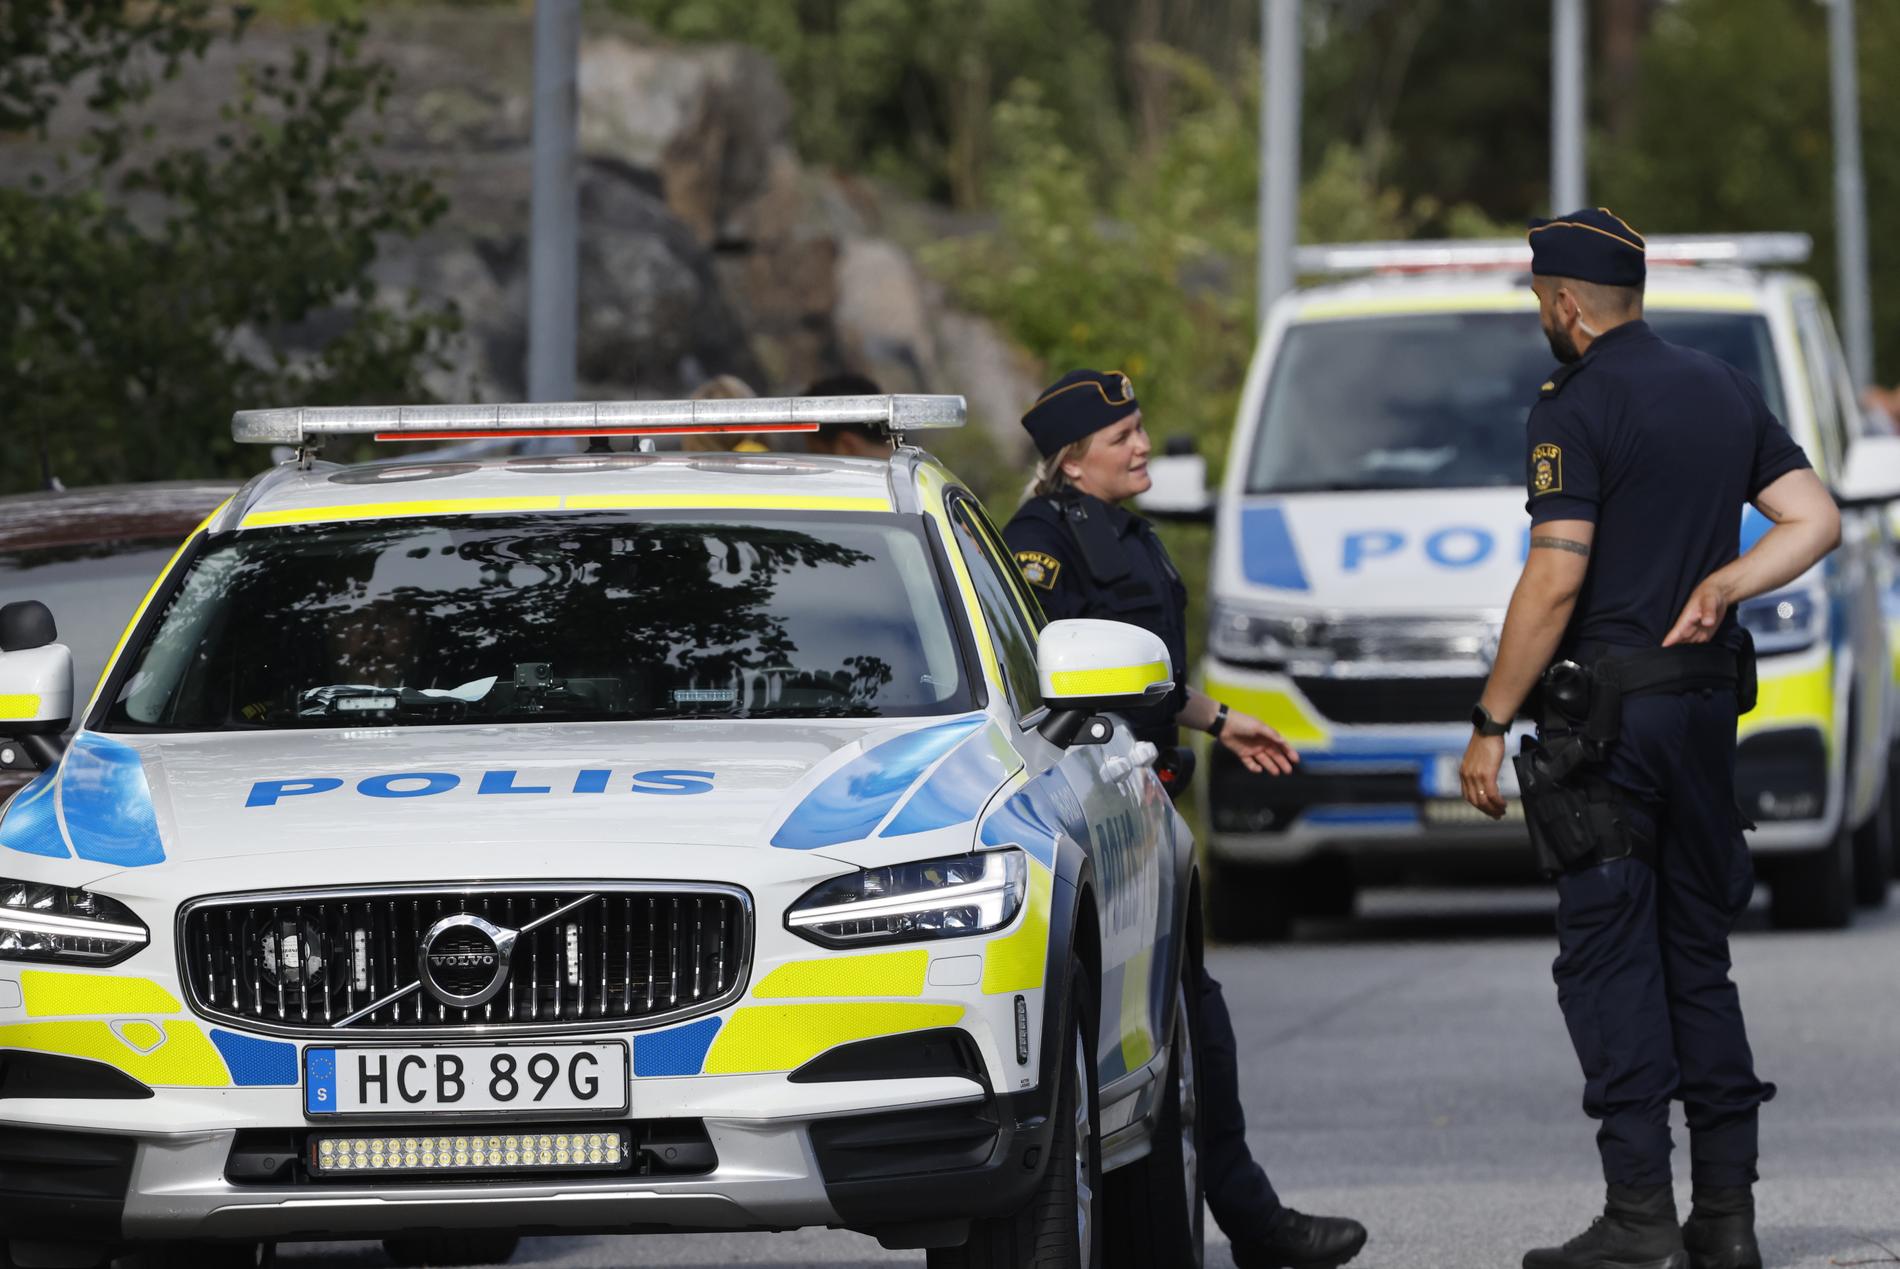 Polis på plats efter att 17-åringens kropp hittats i ett skogsparti på Värmdö utanför Stockholm. 